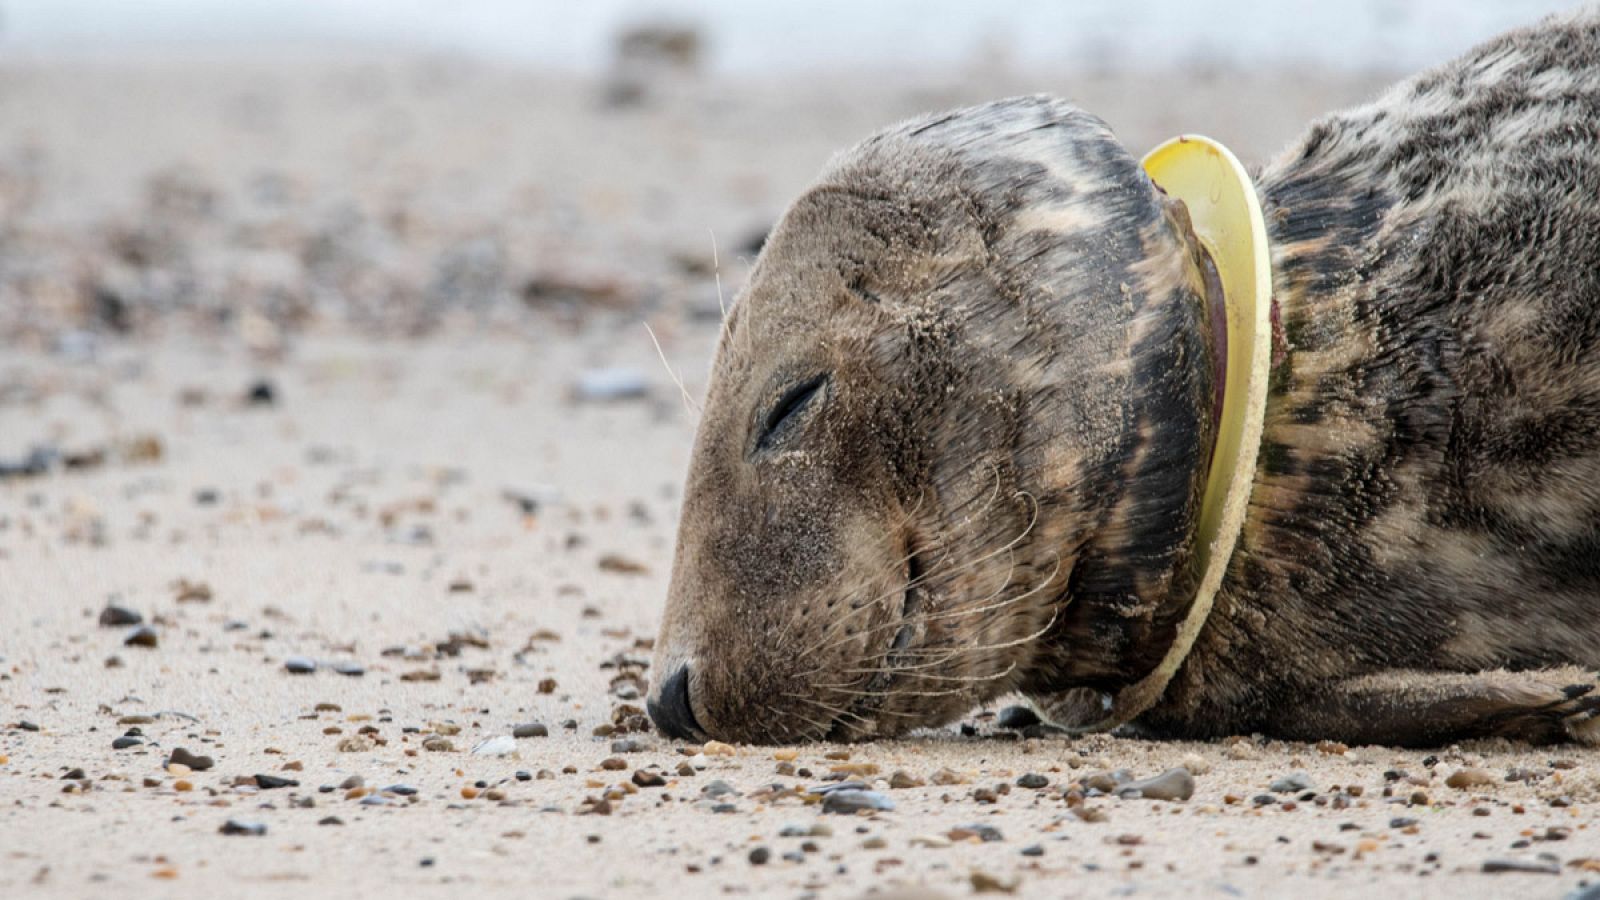 Una foca herida con un 'frisbee' en el cuello